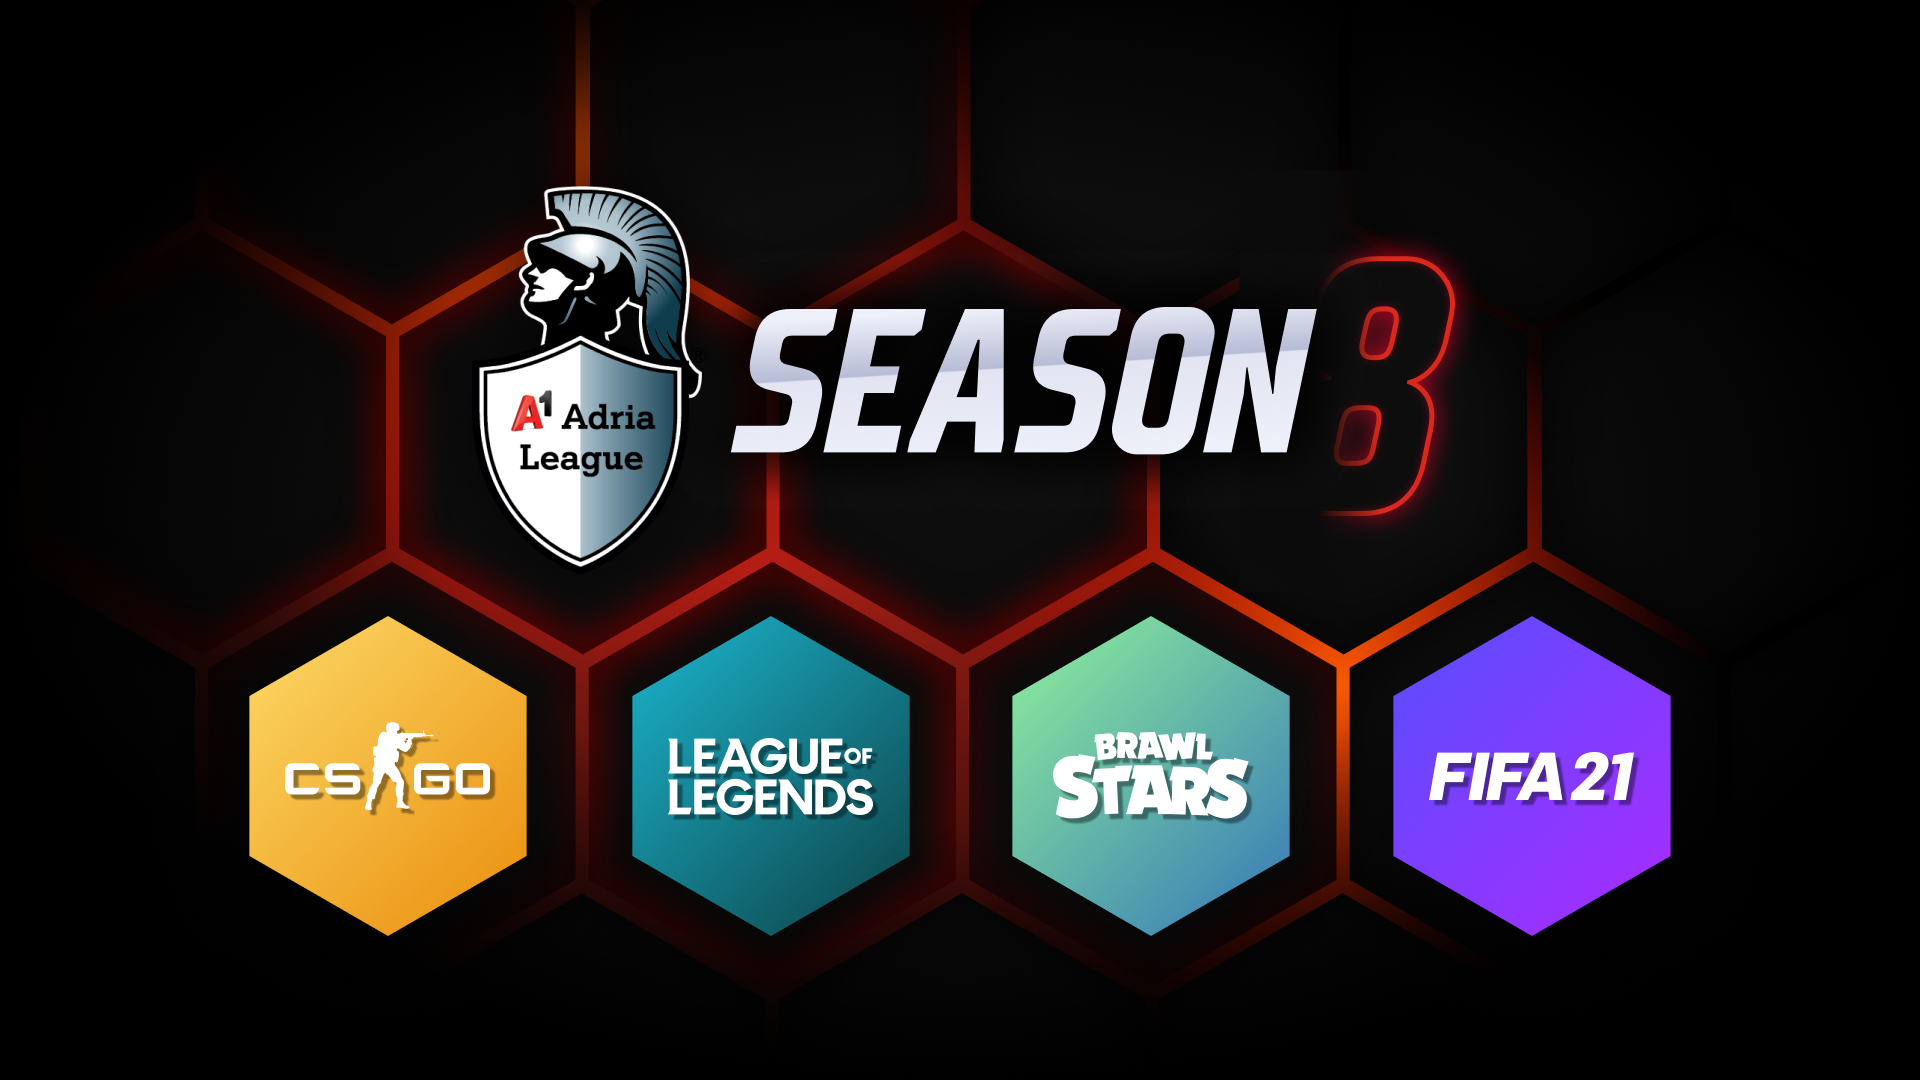 Završnicama 8. sezone A1 Adria Lige završilo treće izdanje Reboot Online Games Weeka